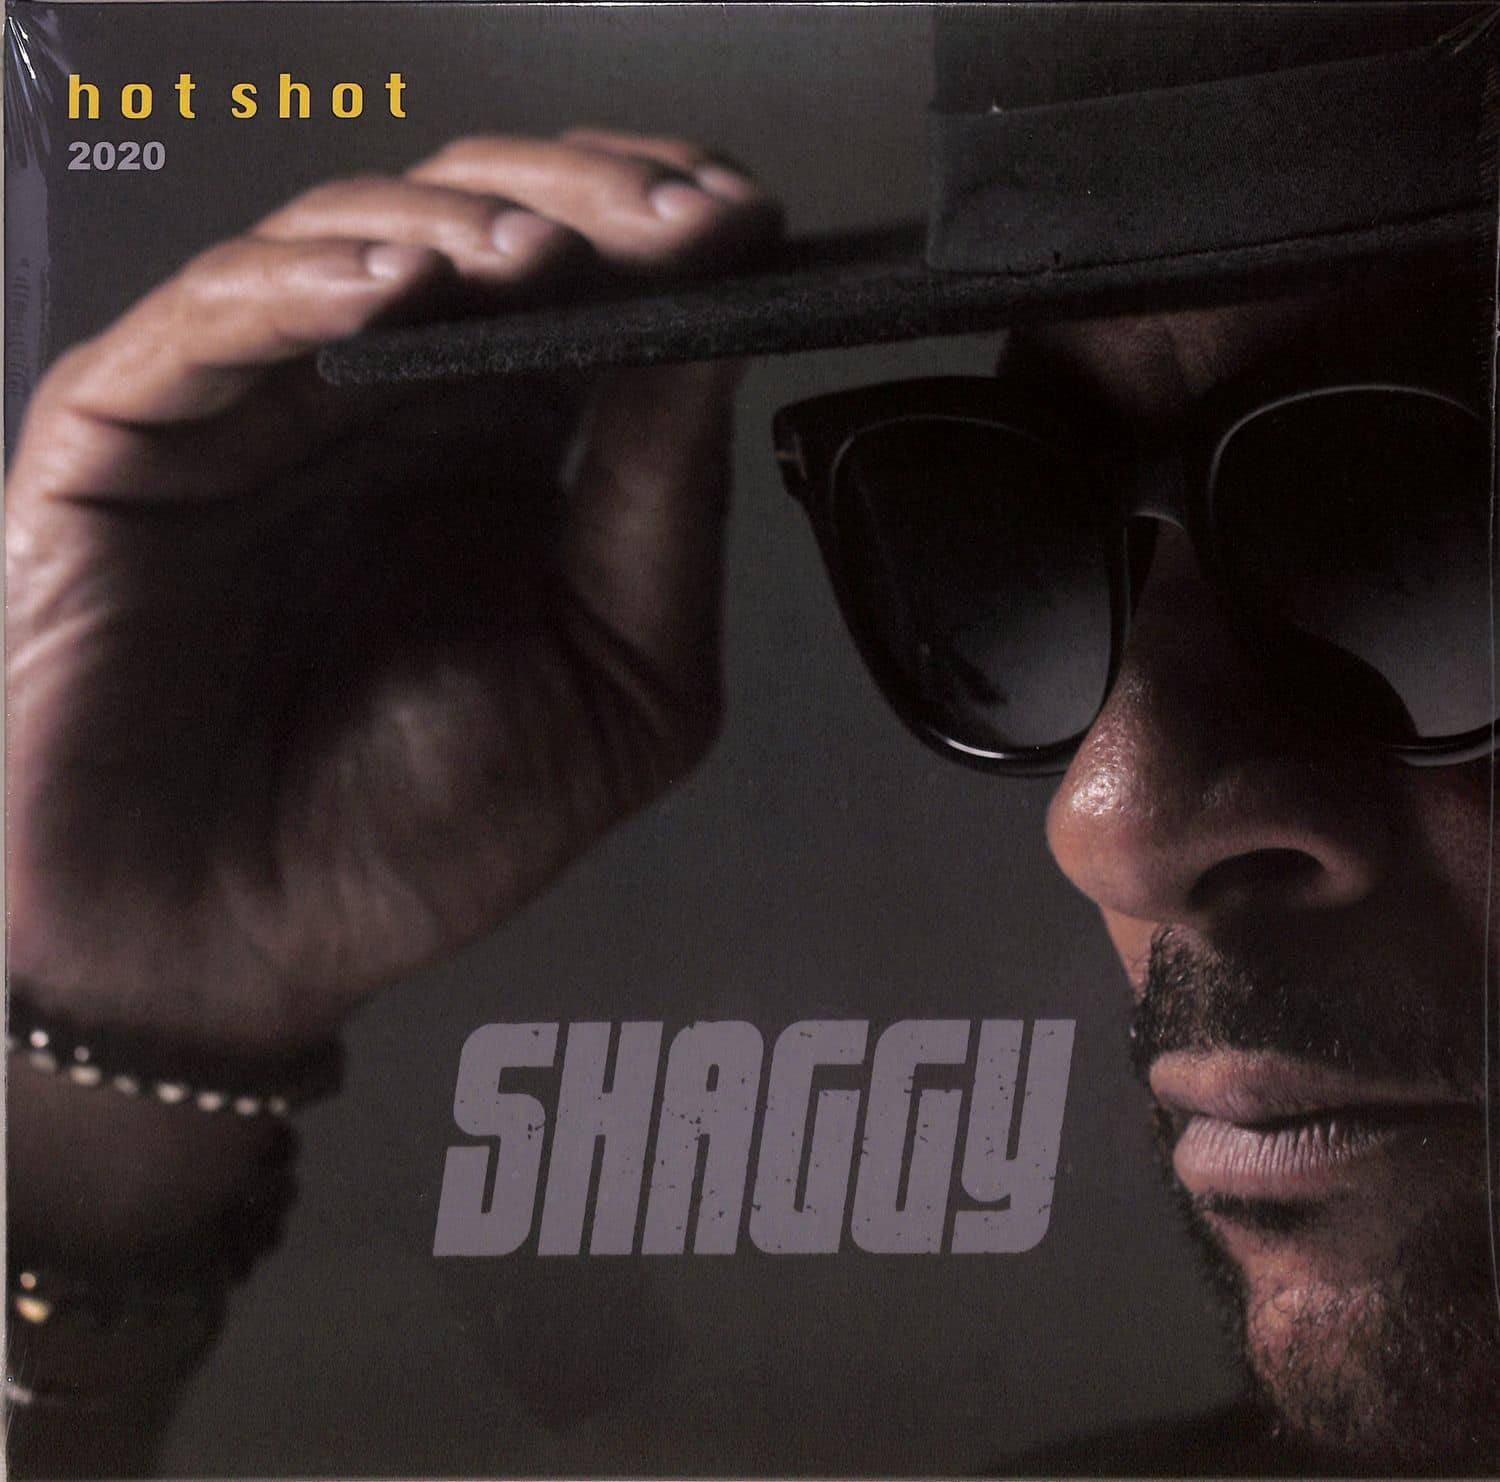 Shaggy - HOT SHOT 2020 